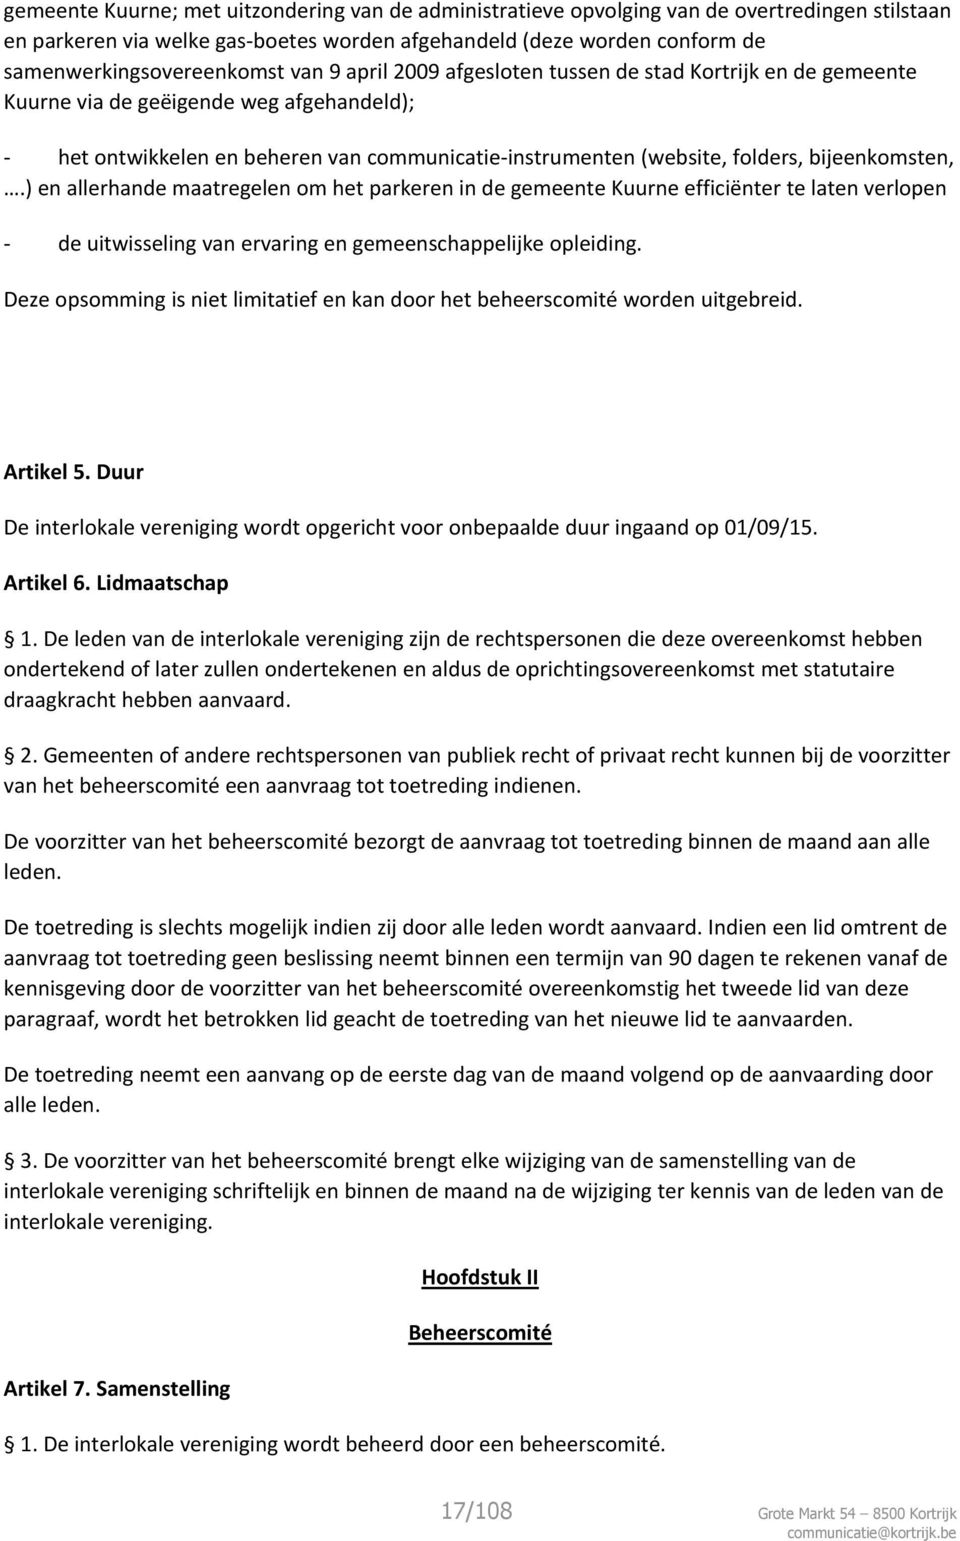 bijeenkomsten,.) en allerhande maatregelen om het parkeren in de gemeente Kuurne efficiënter te laten verlopen - de uitwisseling van ervaring en gemeenschappelijke opleiding.